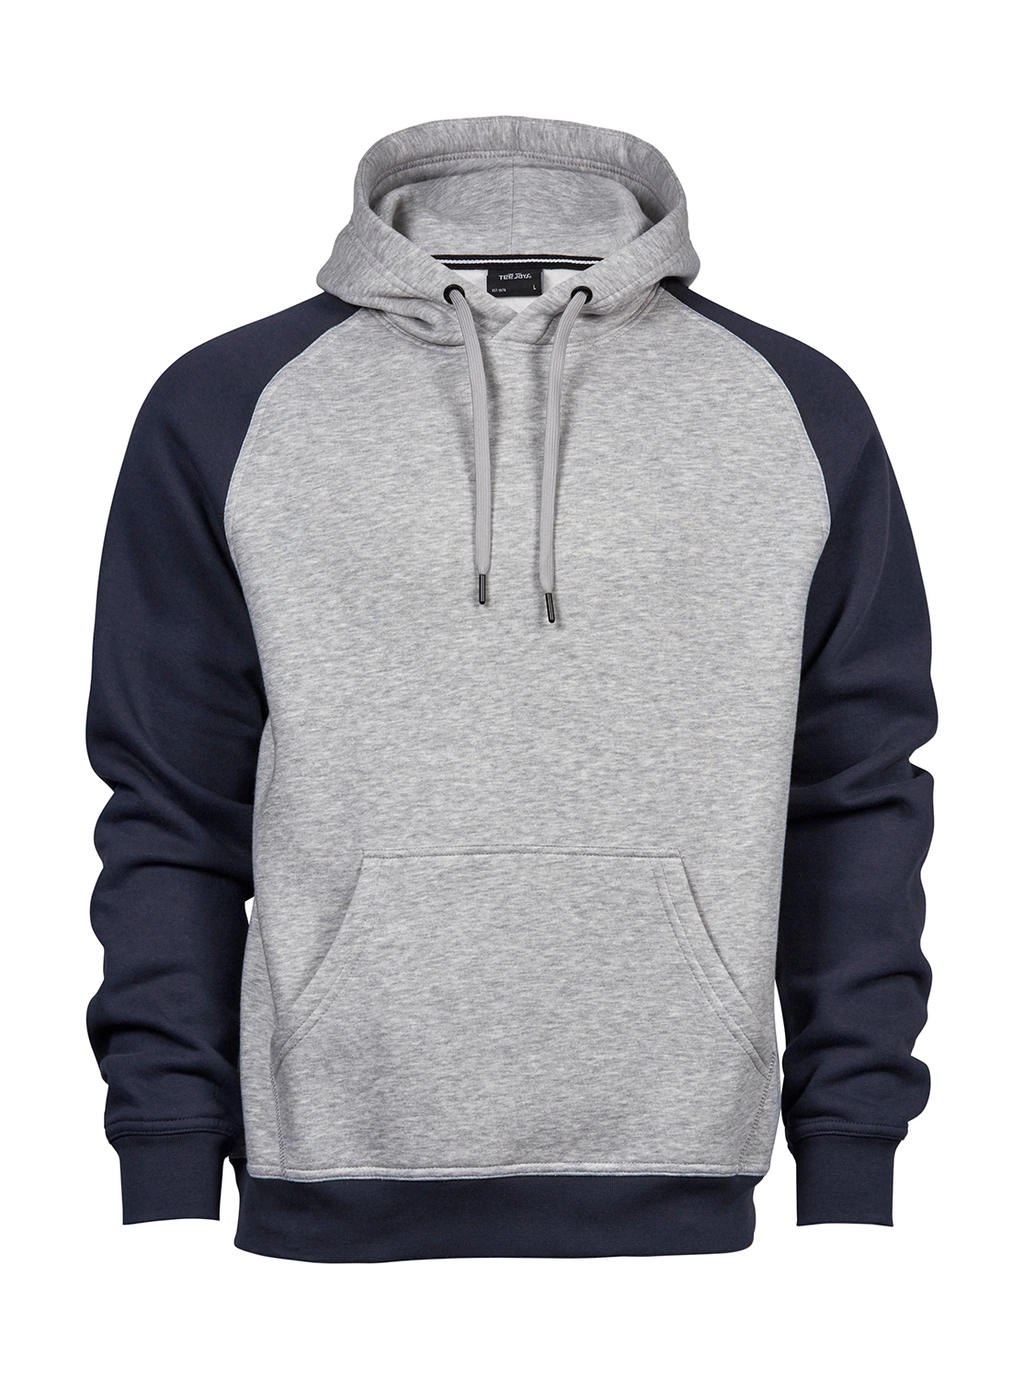 Two-Tone Hooded Sweatshirt zum Besticken und Bedrucken in der Farbe Heather/Navy mit Ihren Logo, Schriftzug oder Motiv.